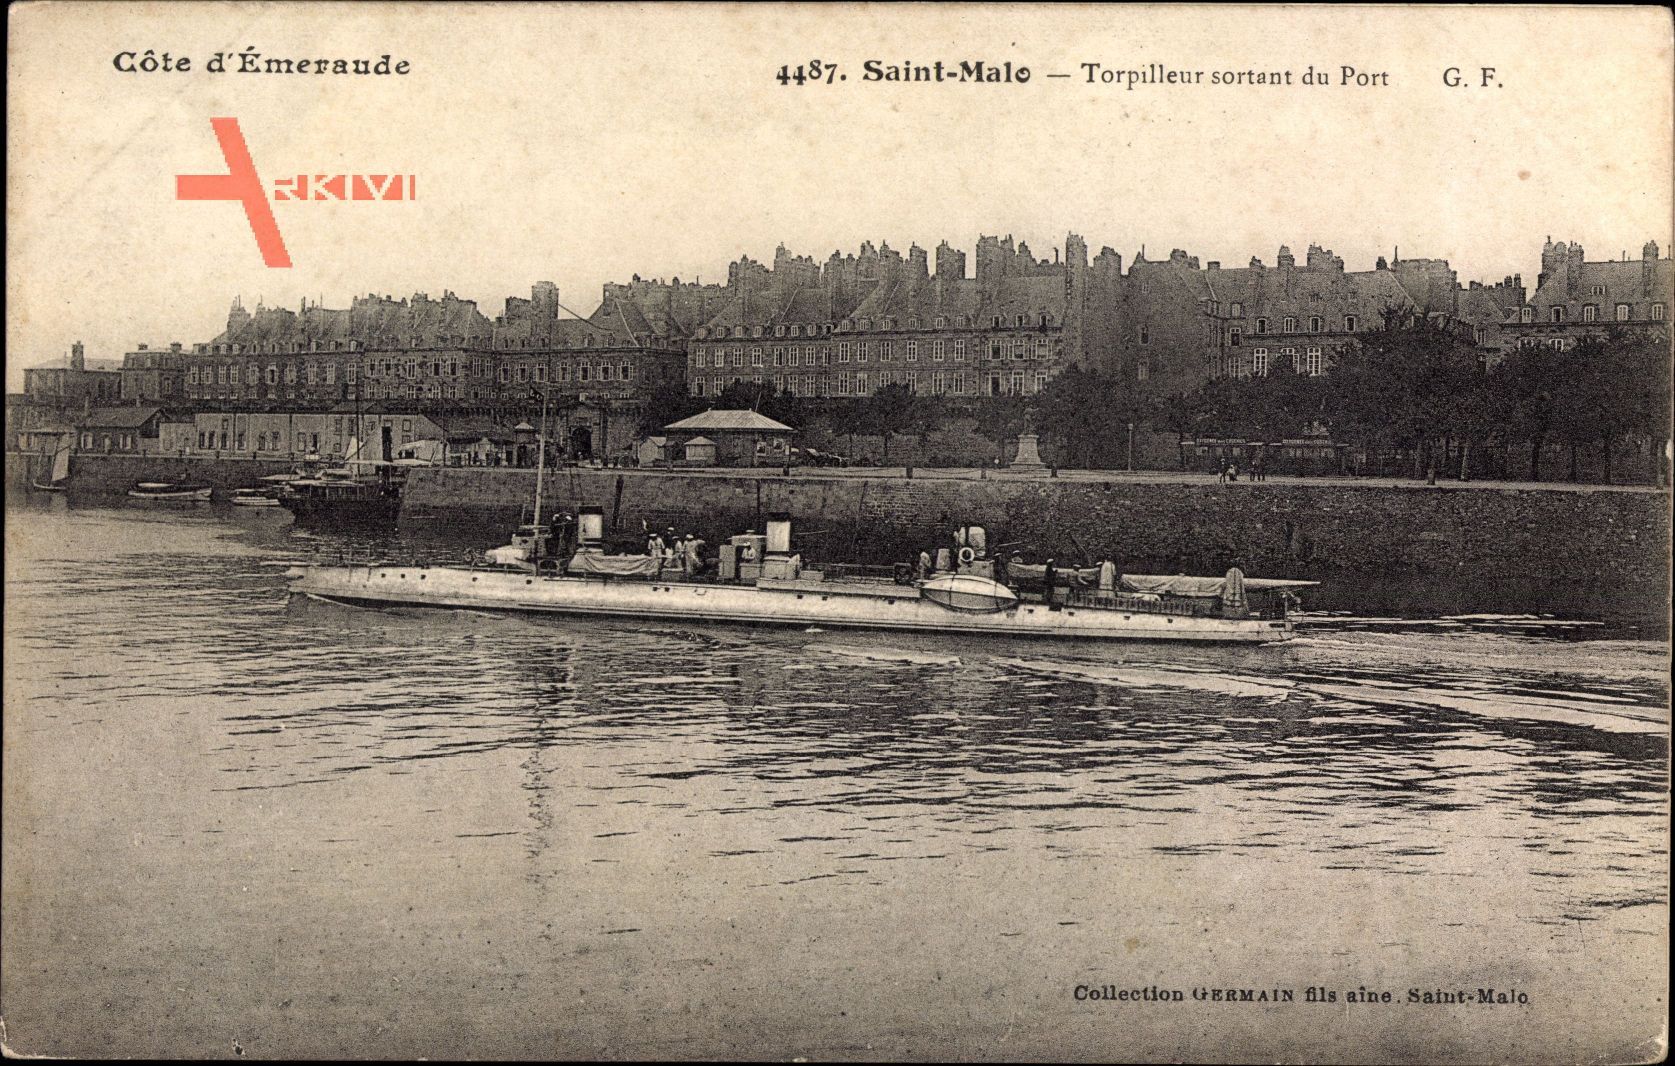 Saint Malo Ille et Vilaine, Torpilleur sortant du Port, Torpedoboot